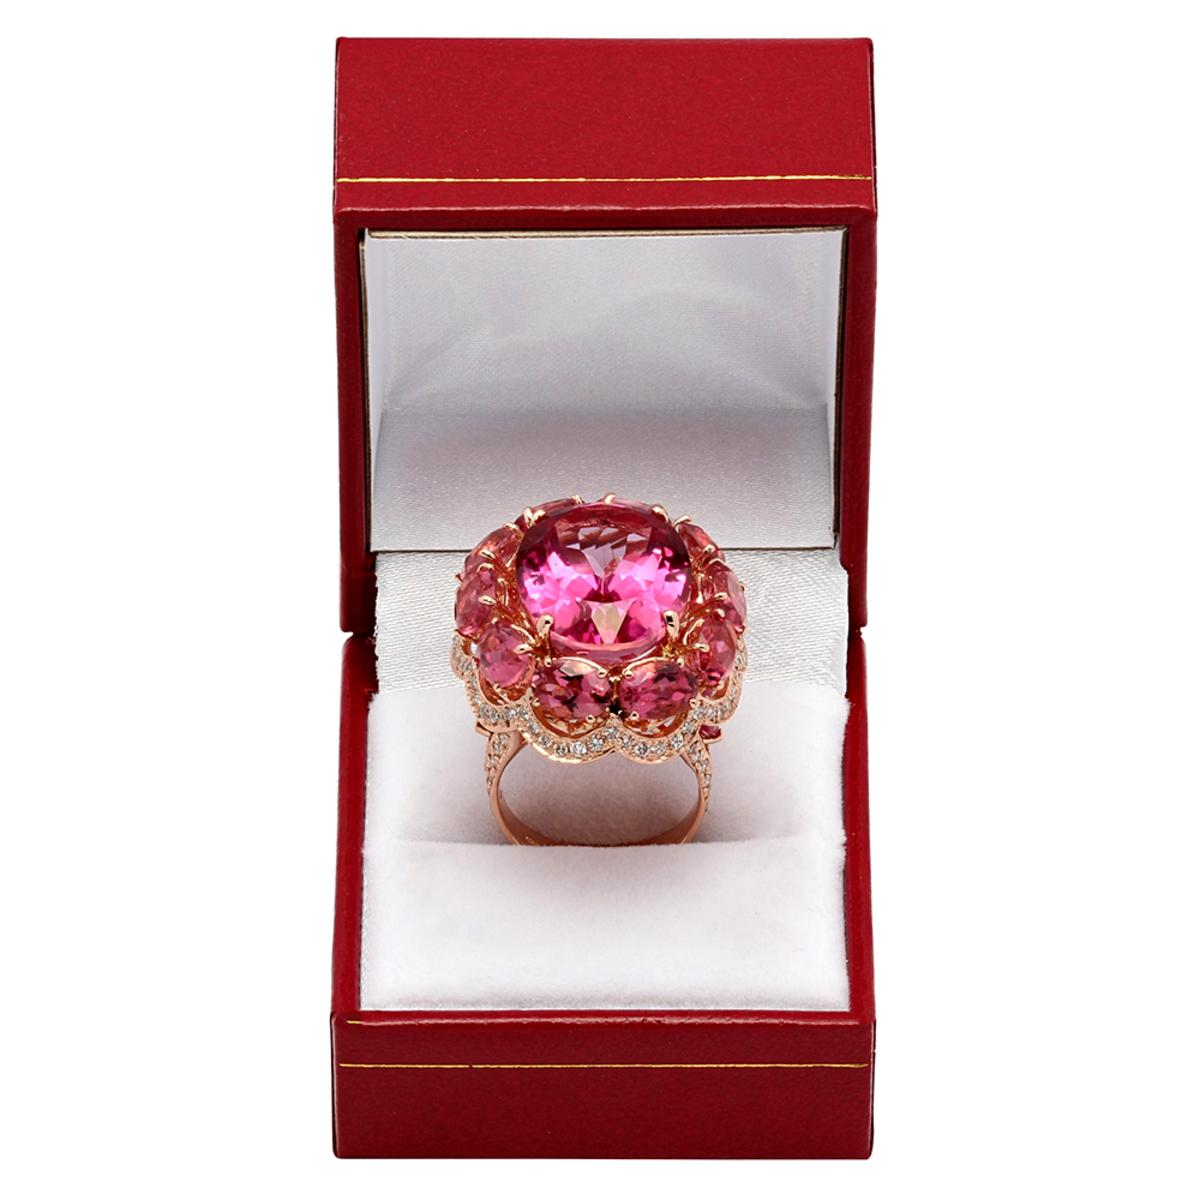 14k Rose Gold 23.44ct Pink Topaz 14.21ct Pink Tourmaline 2.23ct Diamond Ring